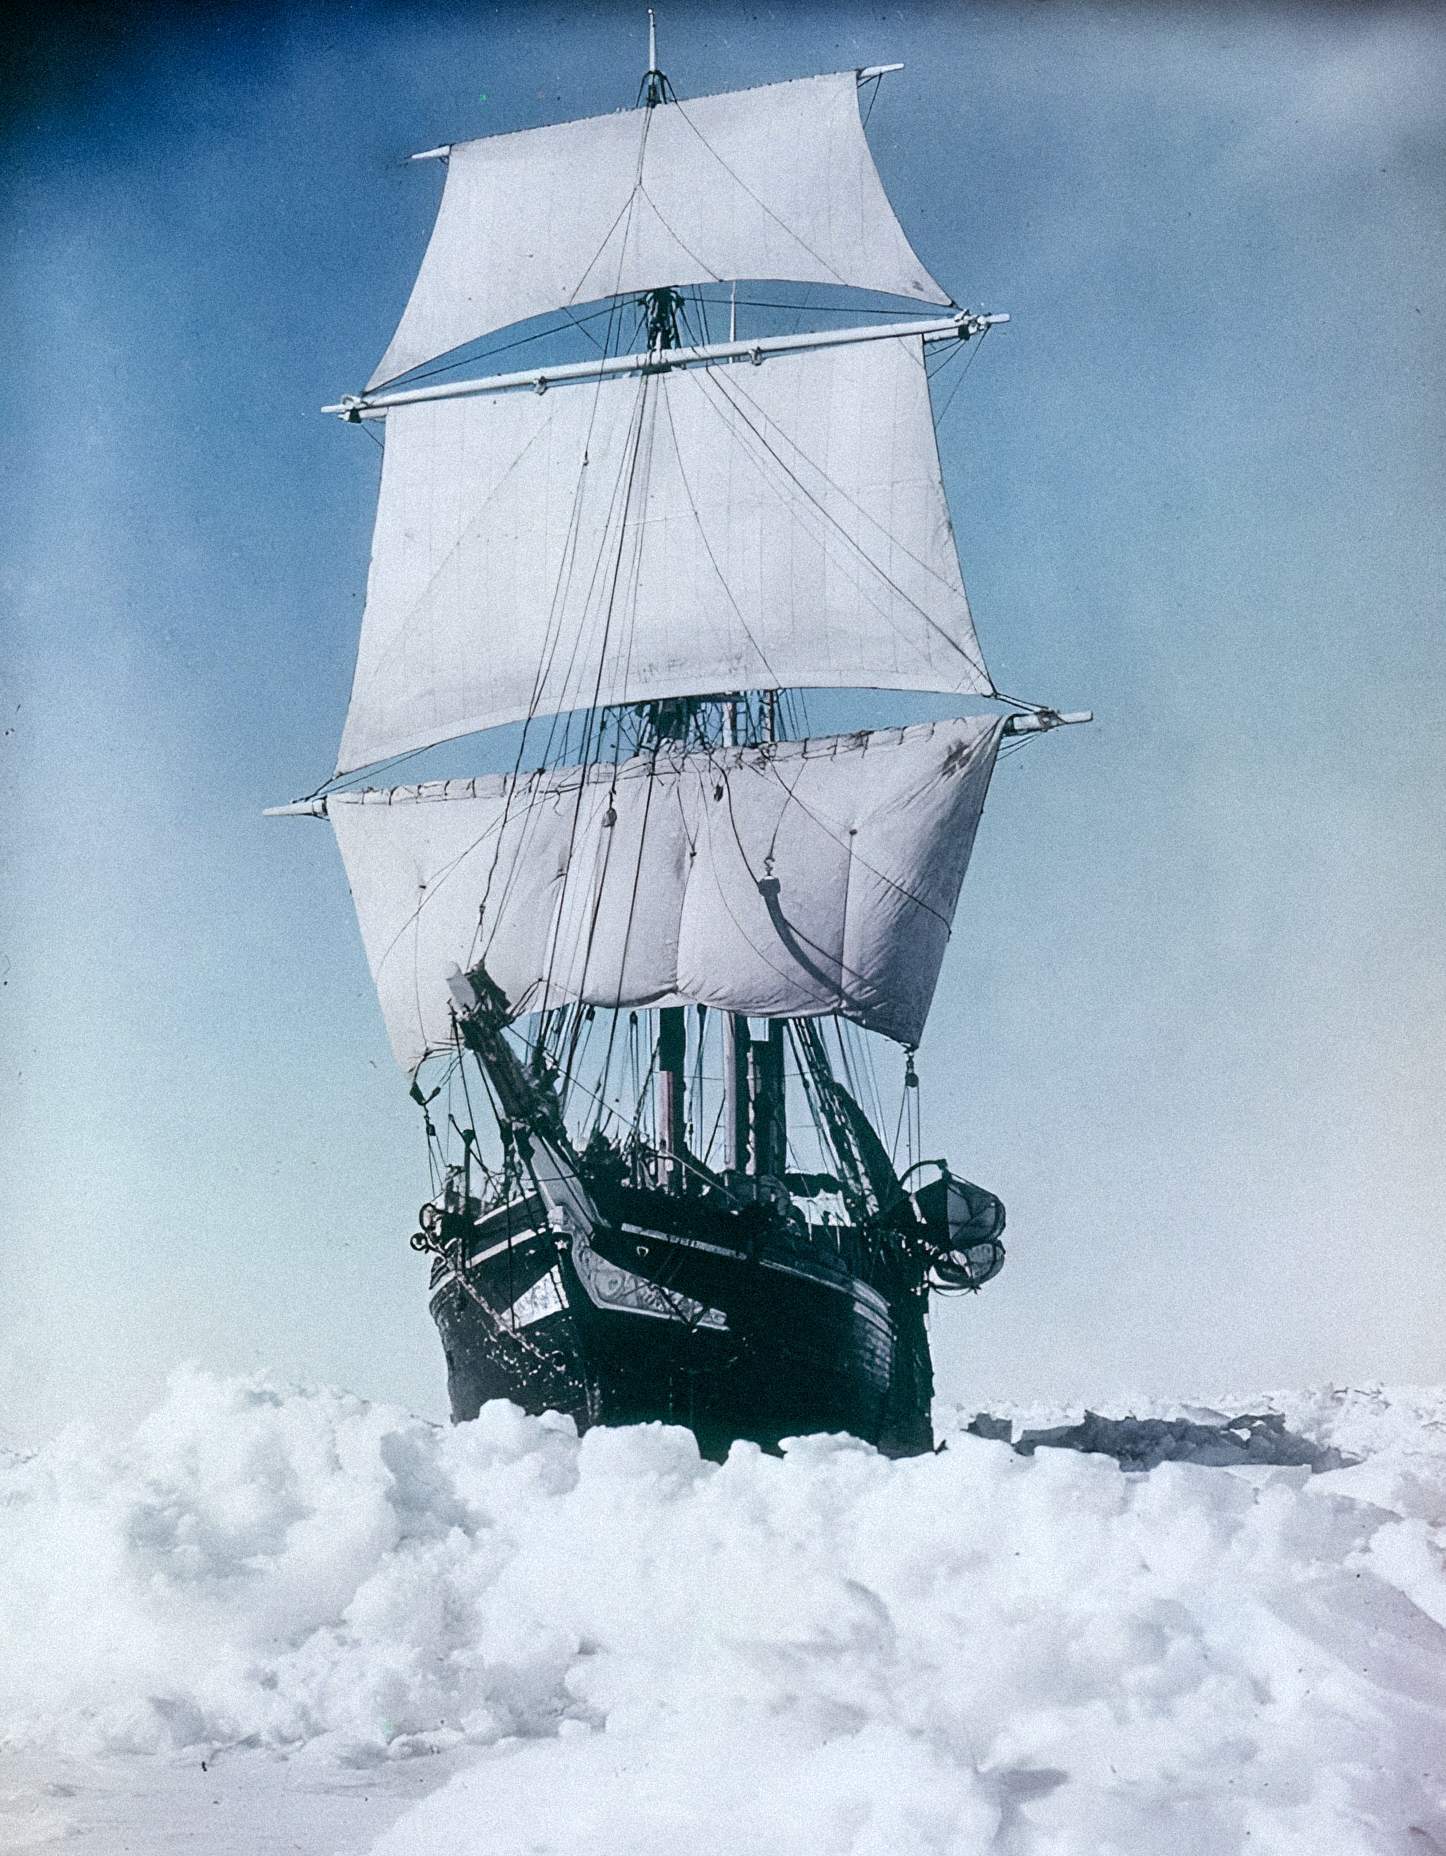 Frank Hurley tarafından yazılan Imperial Trans-Antarctic Expedition, 1915'te Weddell Denizi'ndeki buz kütlesini kırmaya çalışırken buhar ve yelken altında dayanıklılık.